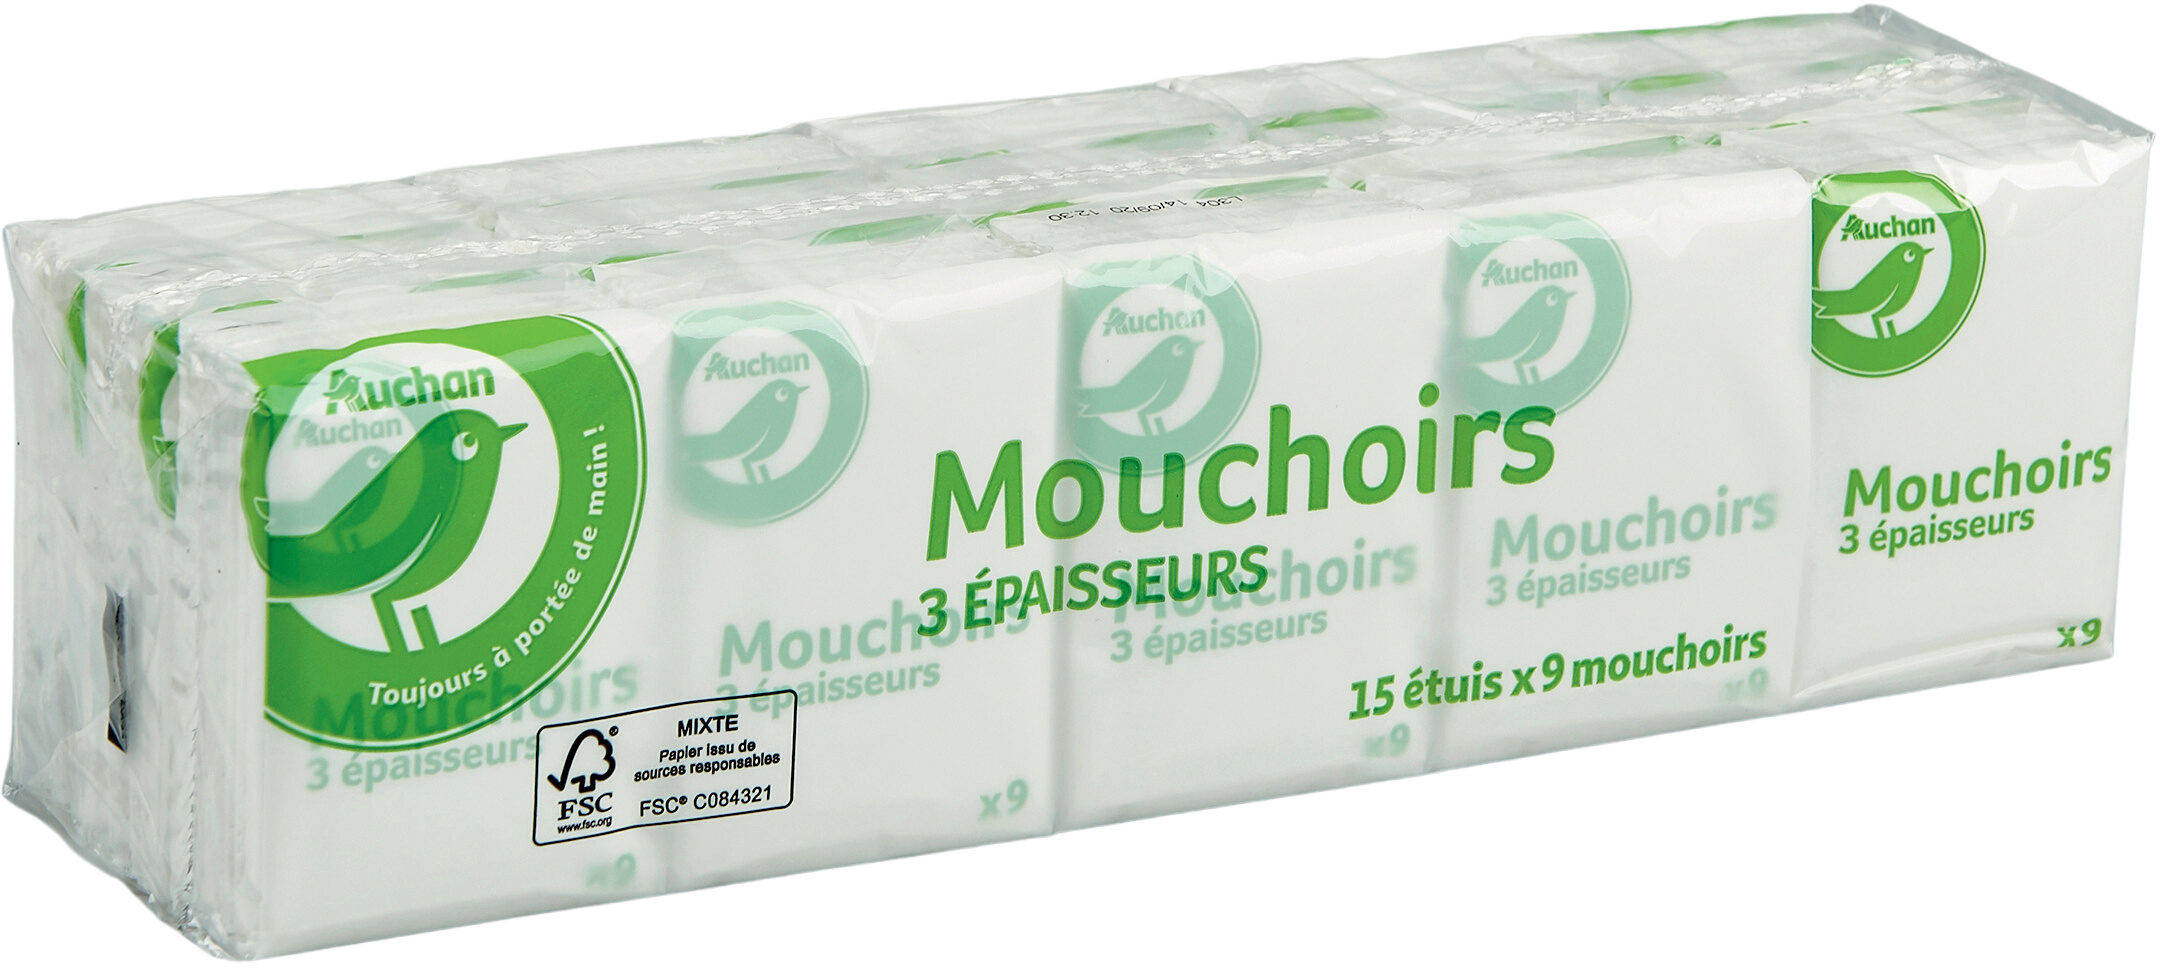 Auchan essentiel mouchoirs etuis x15 - 製品 - fr